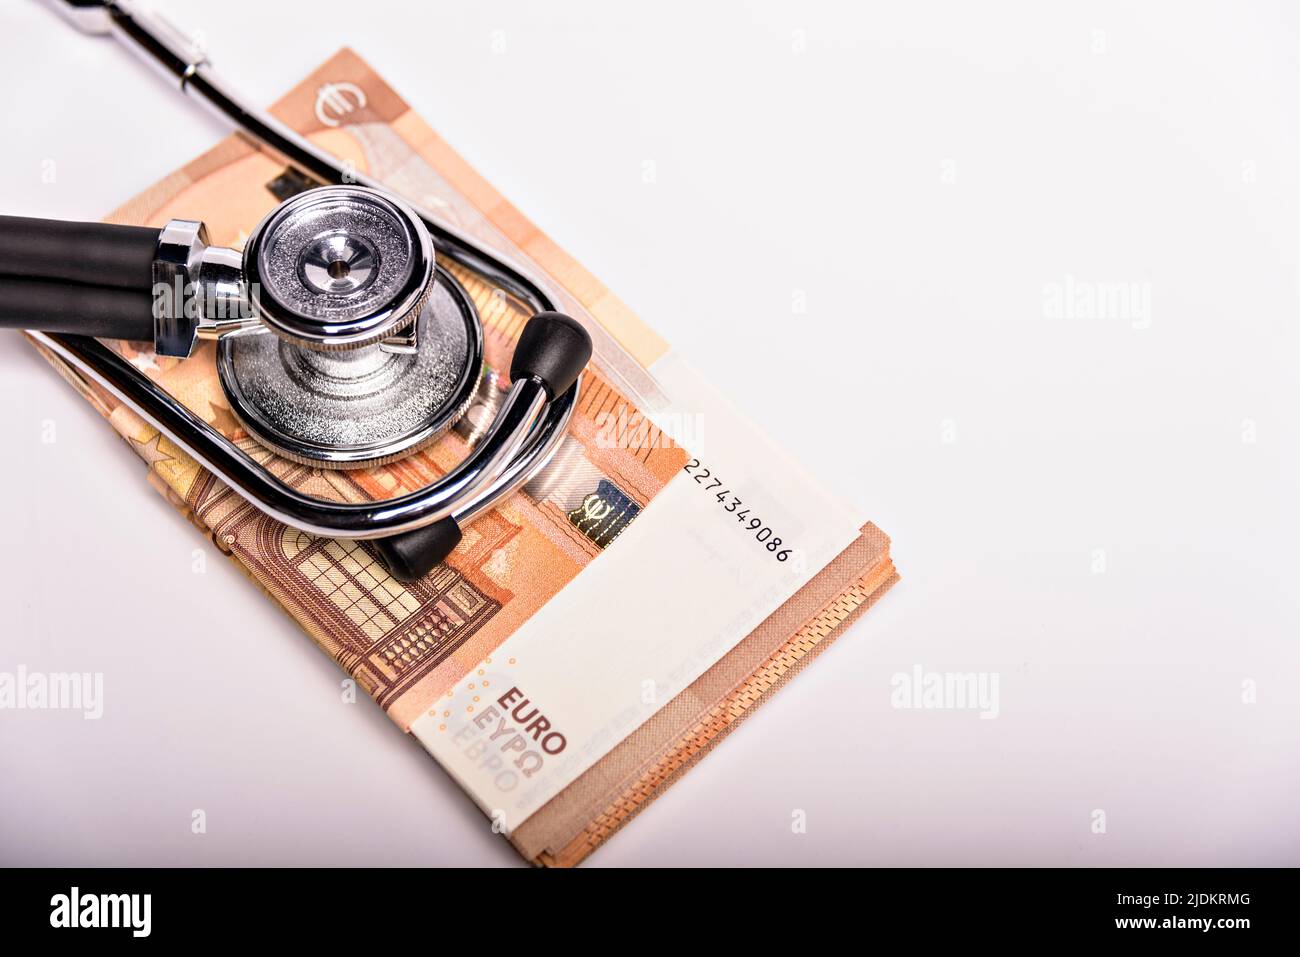 Costi sanitari immagine concettuale: Stetoscopio e cumulo di denaro su una carta medica, simbolo dei costi sanitari o assicurazione sanitaria, isolato sopra Foto Stock